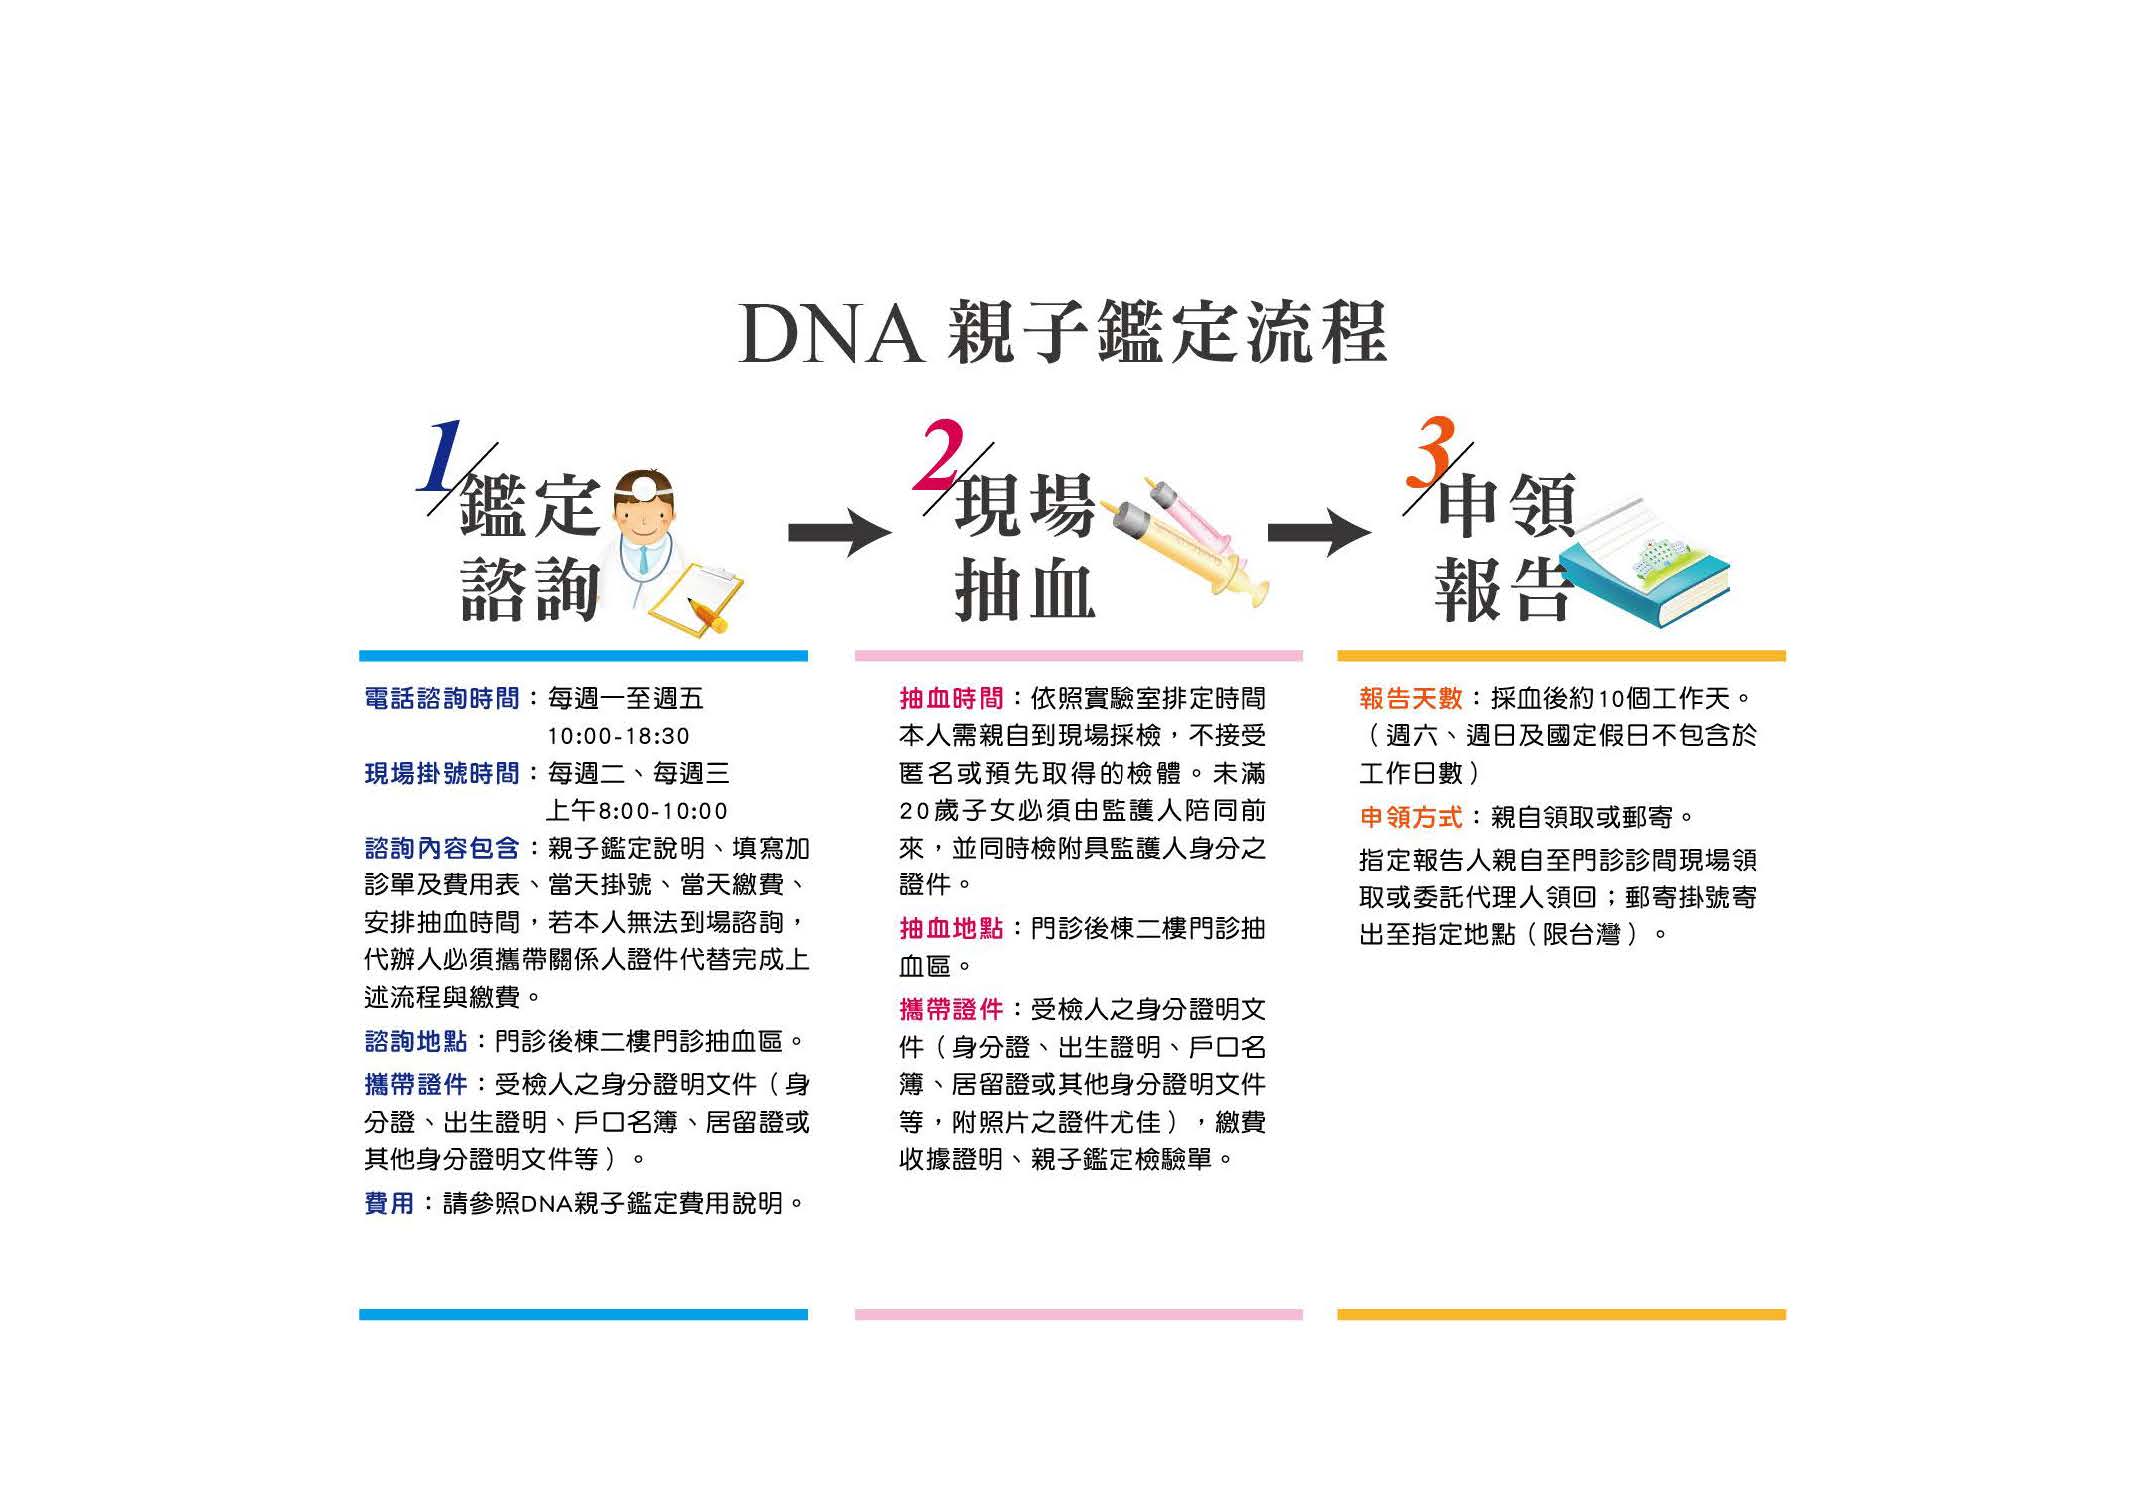 DNA親子鑑定流程示意圖